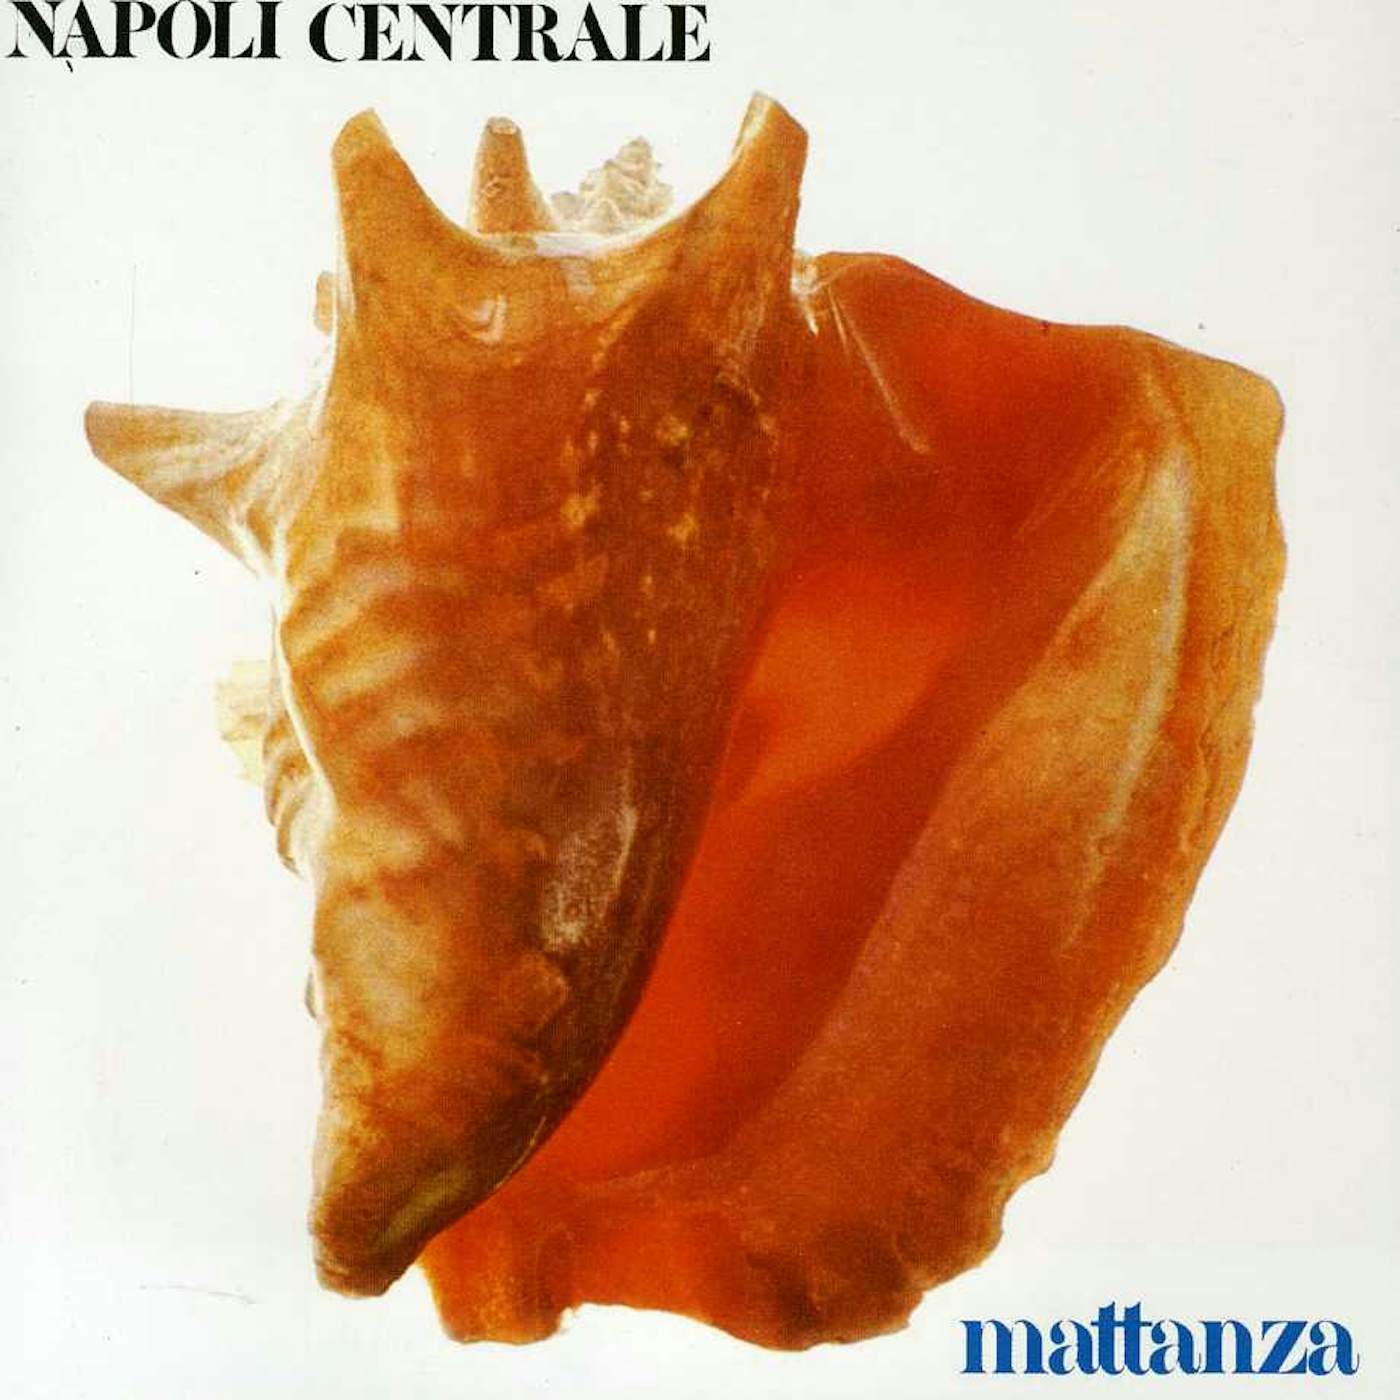 Napoli Centrale MATTANZA CD